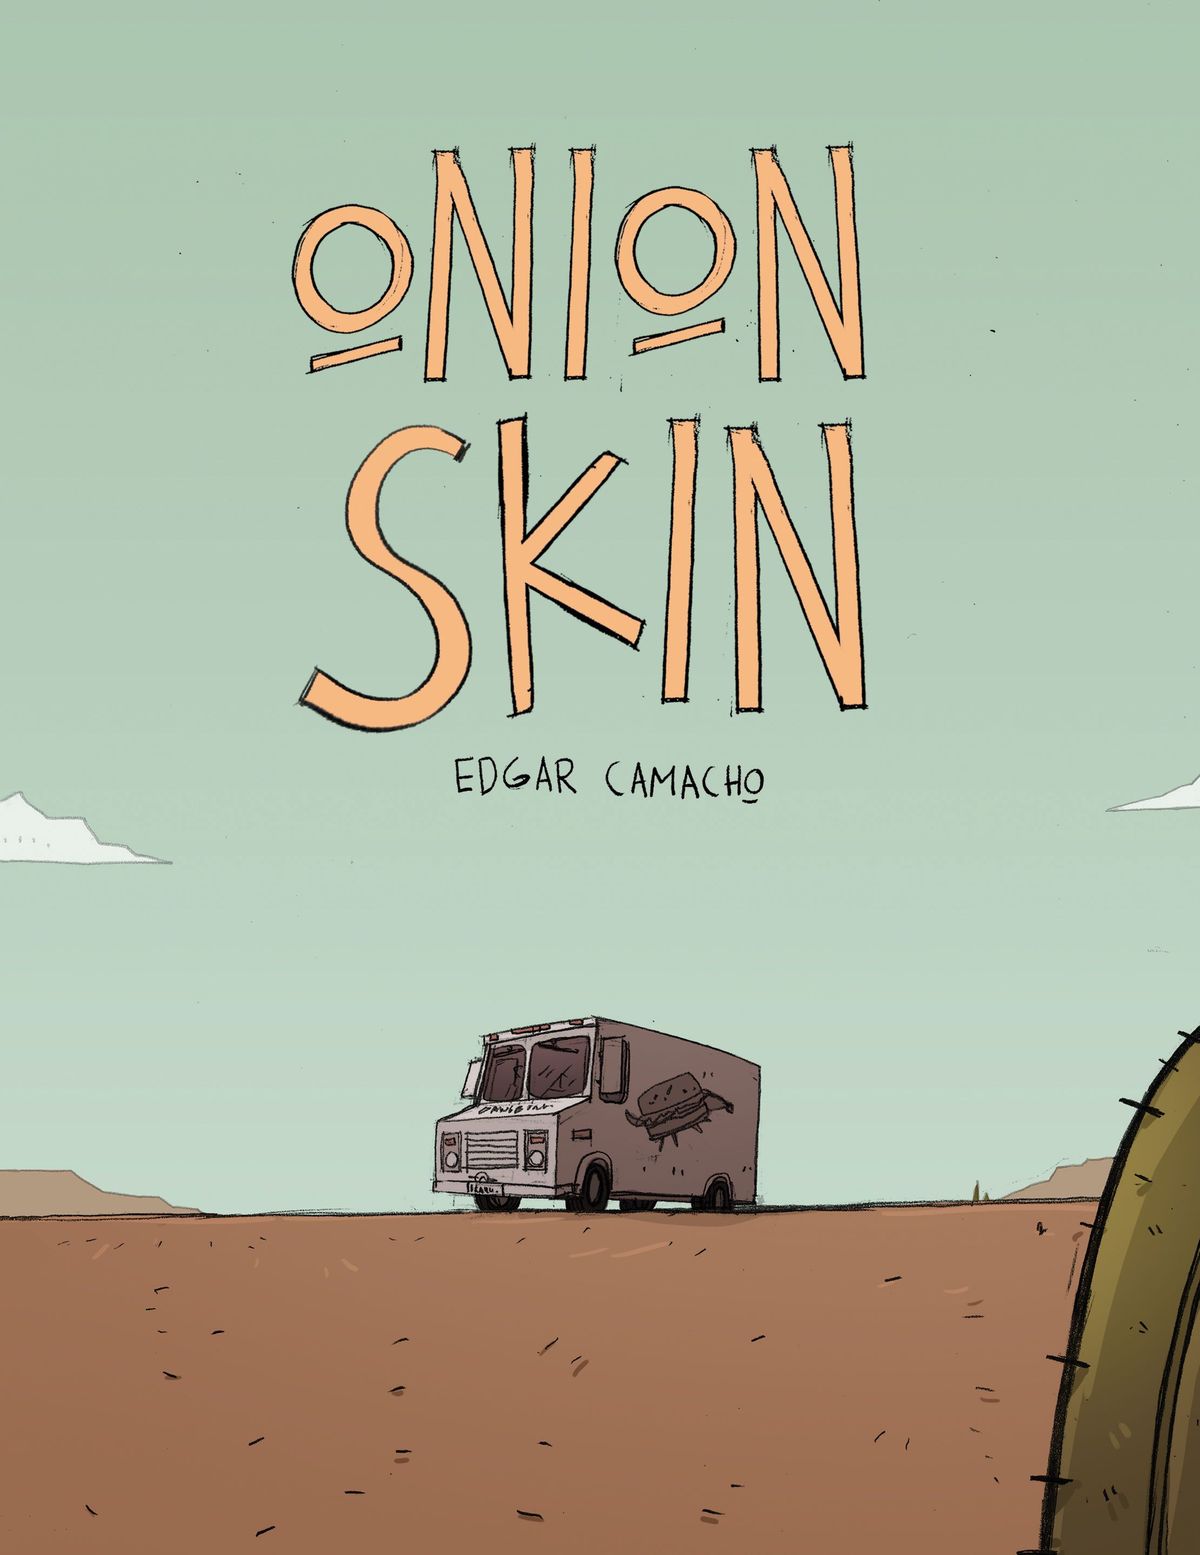 ดูตัวอย่างพิเศษ: Onion Skin ผู้ชนะรางวัลนวนิยายกราฟิคระดับประเทศคนแรกของเม็กซิโก